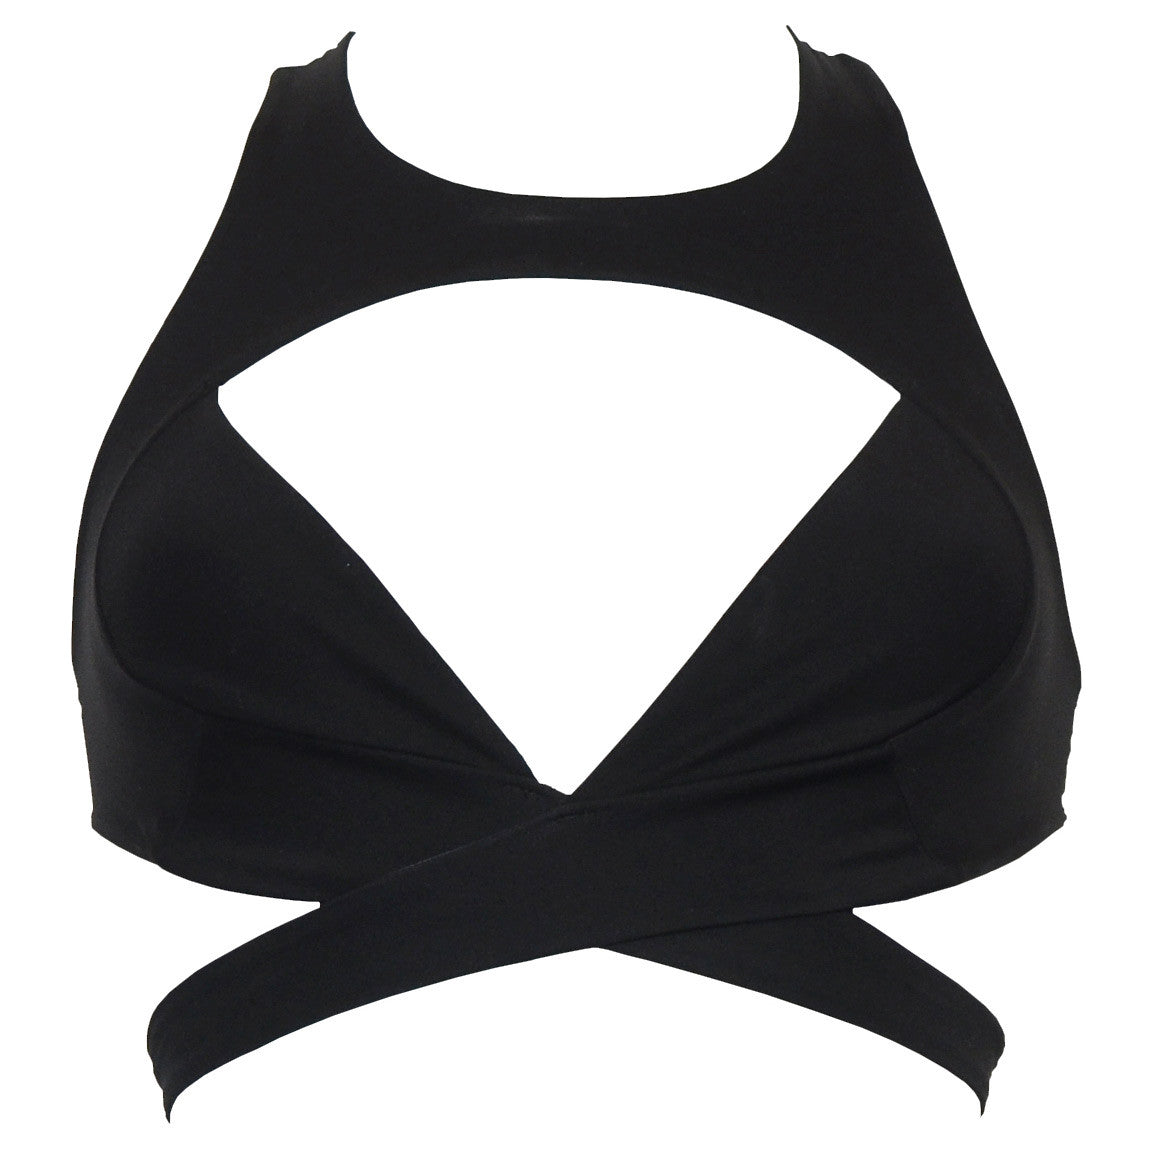 DSTM Maya bra black bikini cross front wrap around straps